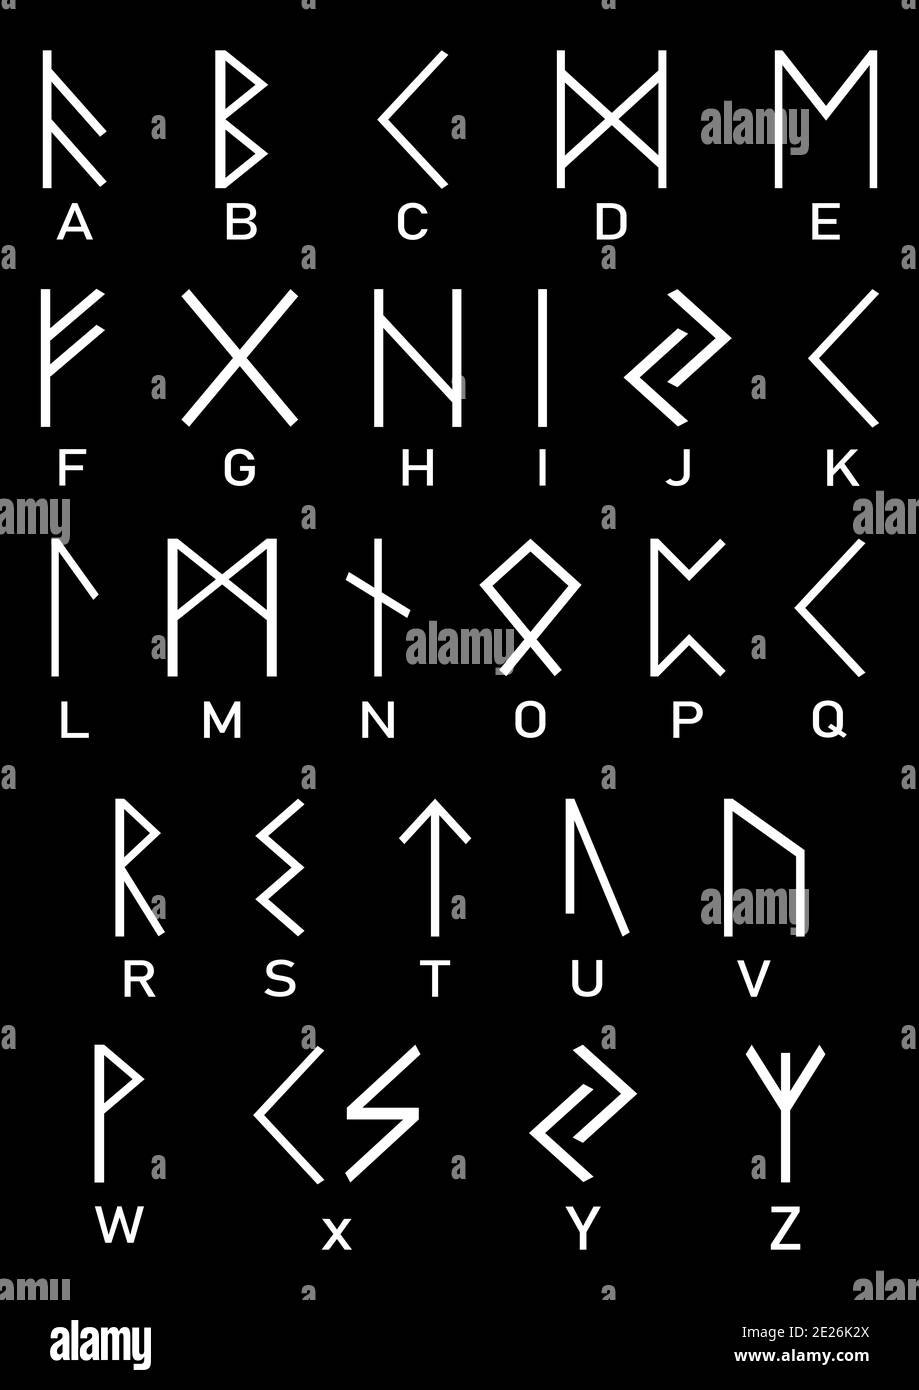 Alfabeto vichingo. Simboli vichinghi in bianco e nero. Vecchie lettere rune e le loro controparti in alfabeto latino. Rune bianche su sfondo nero. Foto Stock